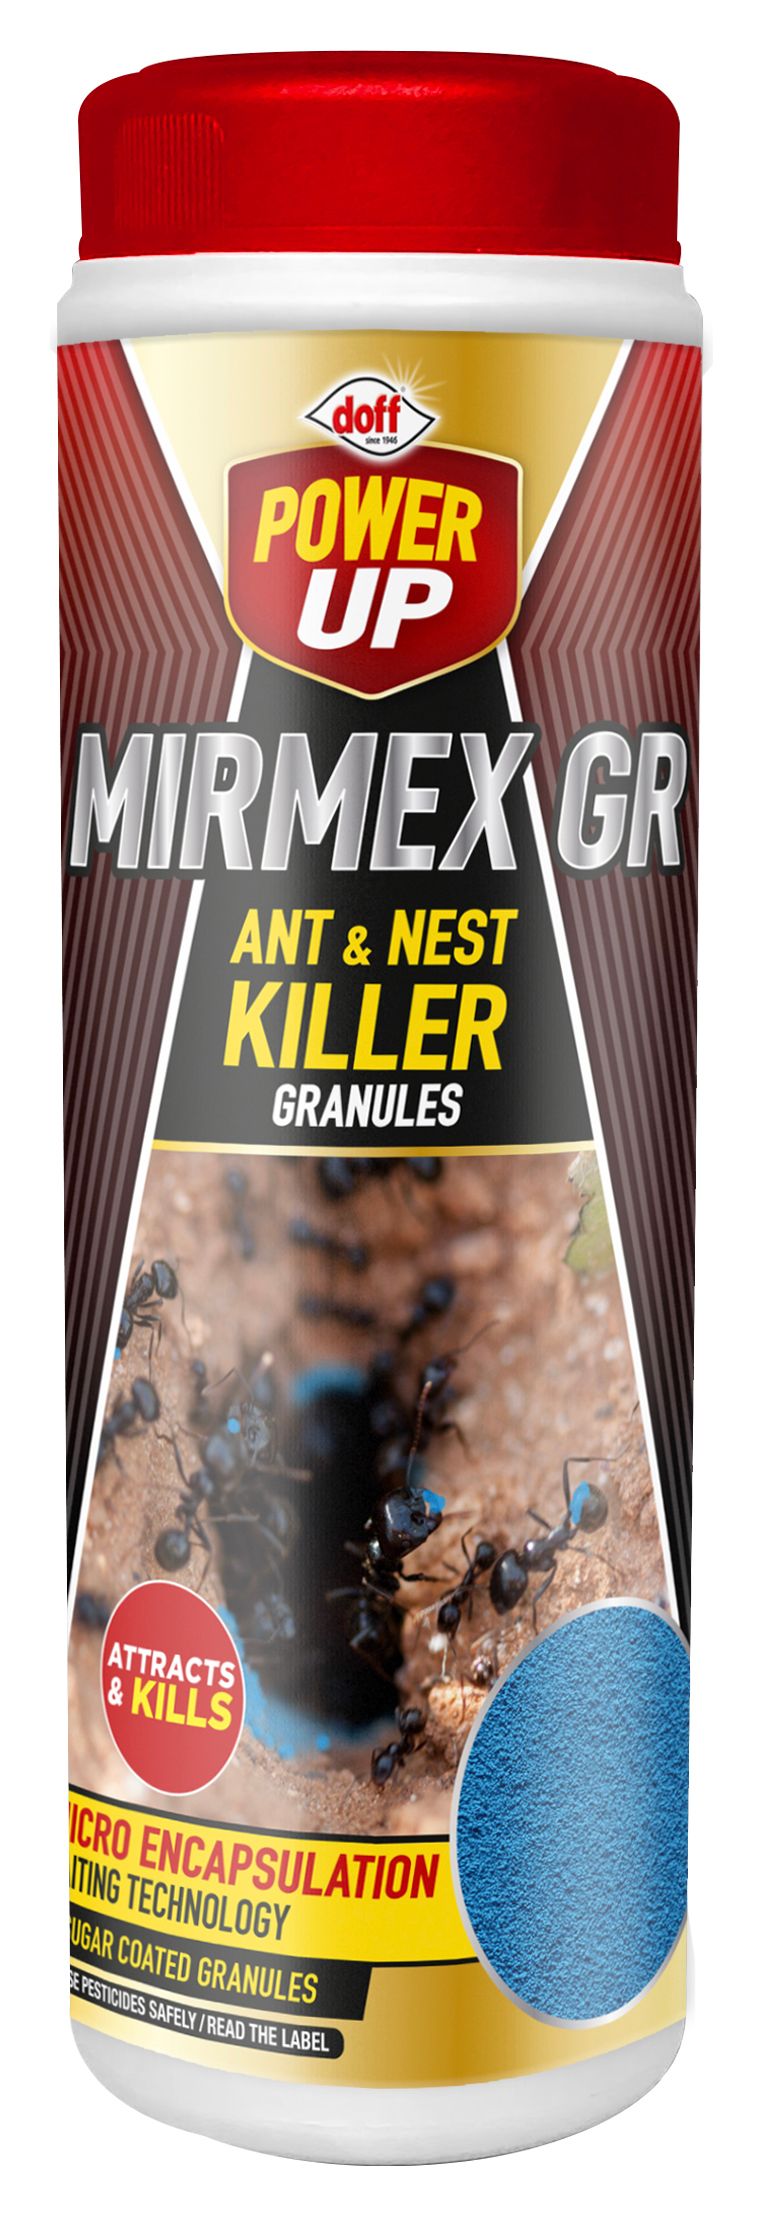 Doff Power Up 2-in-1 Ant & Nest Killer Granules - 350g